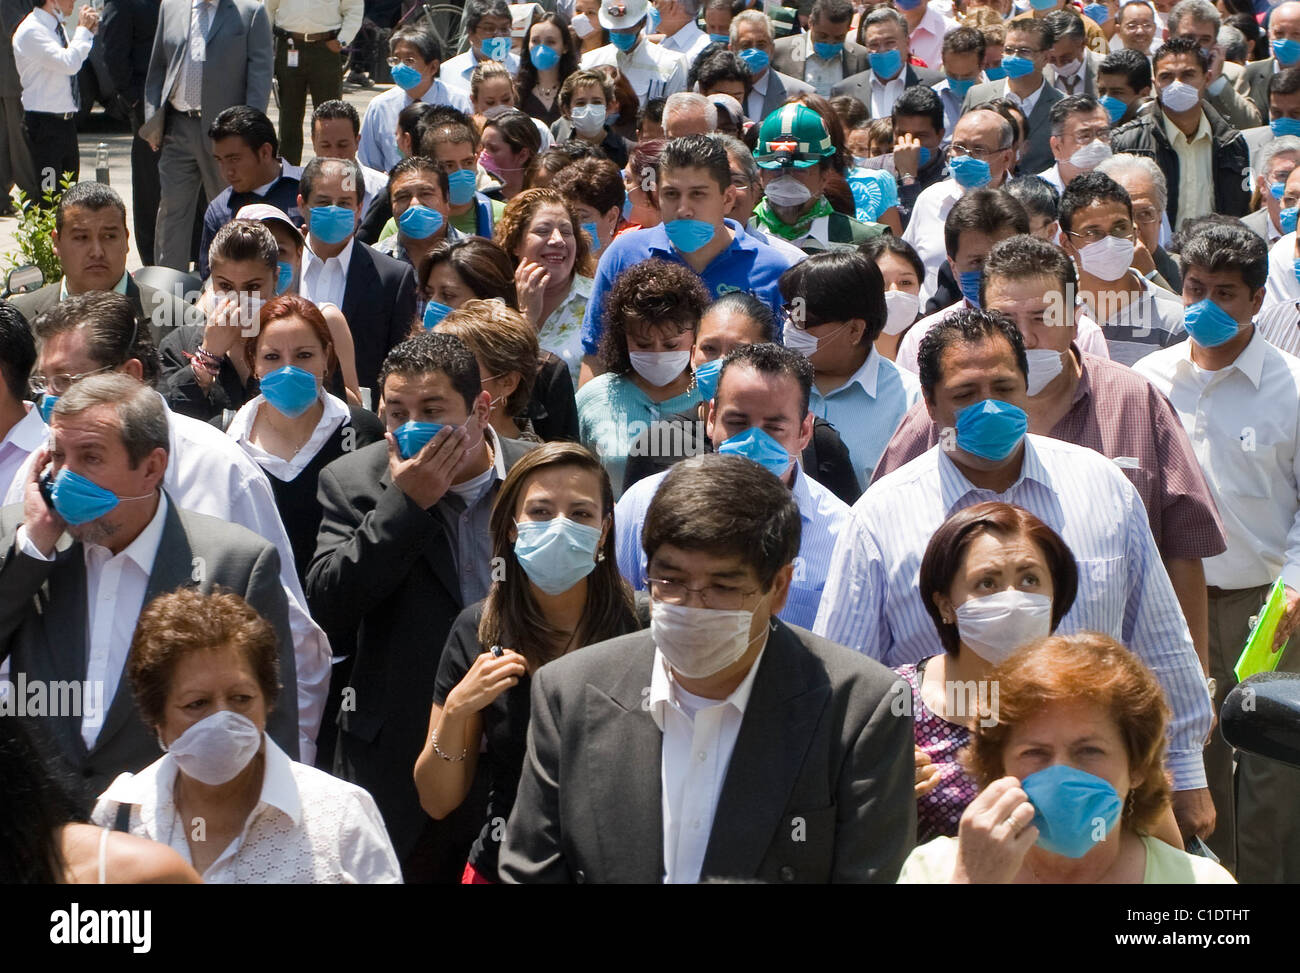 Массово распространяющее заболевание. Массовые заболевания людей. Много людей в масках.